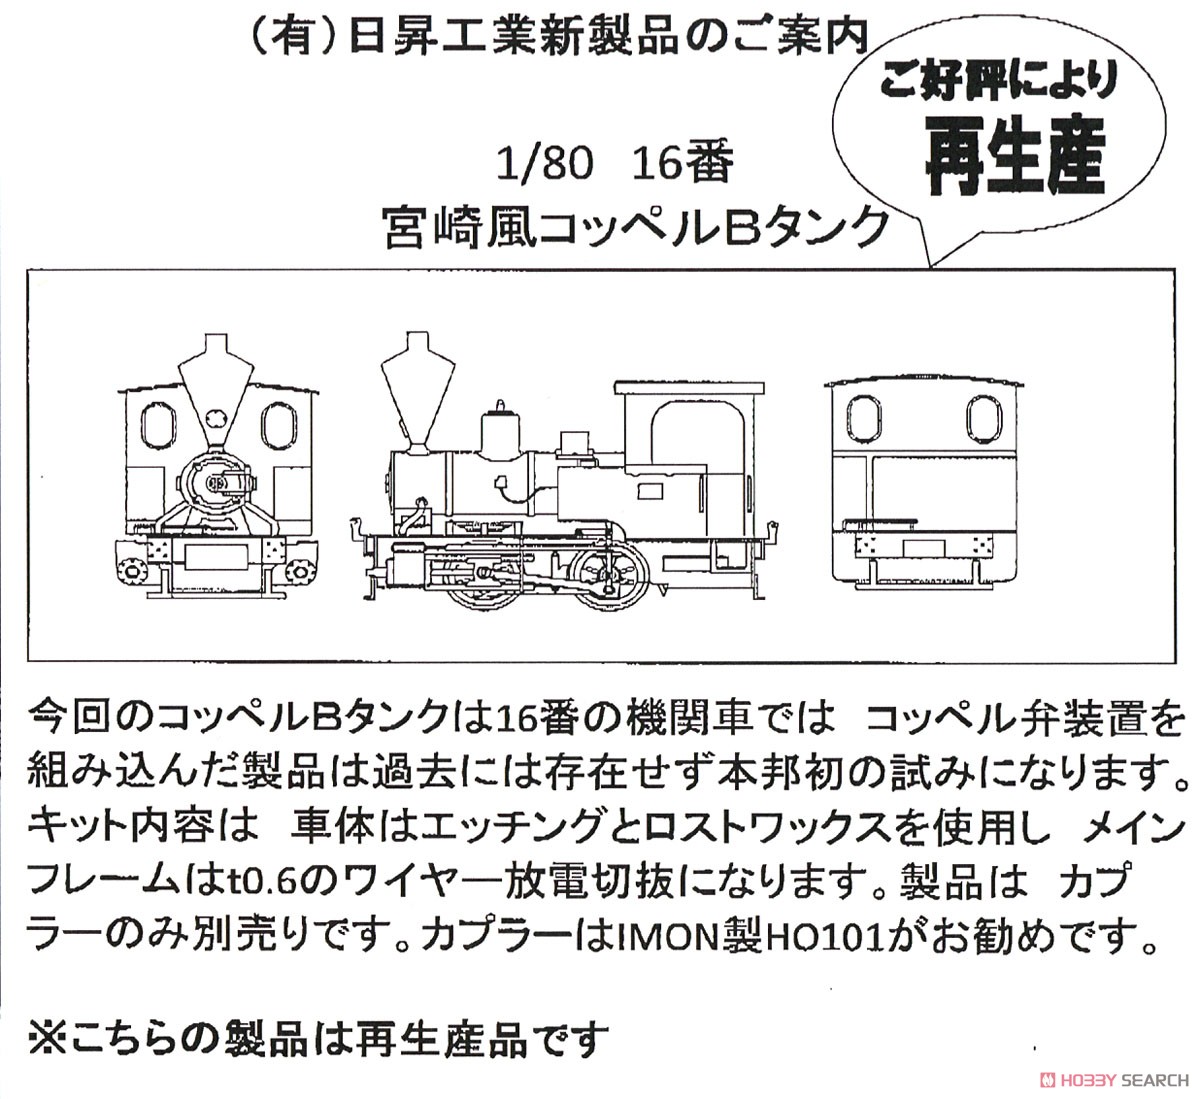 16番(HO) 宮崎風コッペルBタンク (組み立てキット) (鉄道模型) その他の画像2